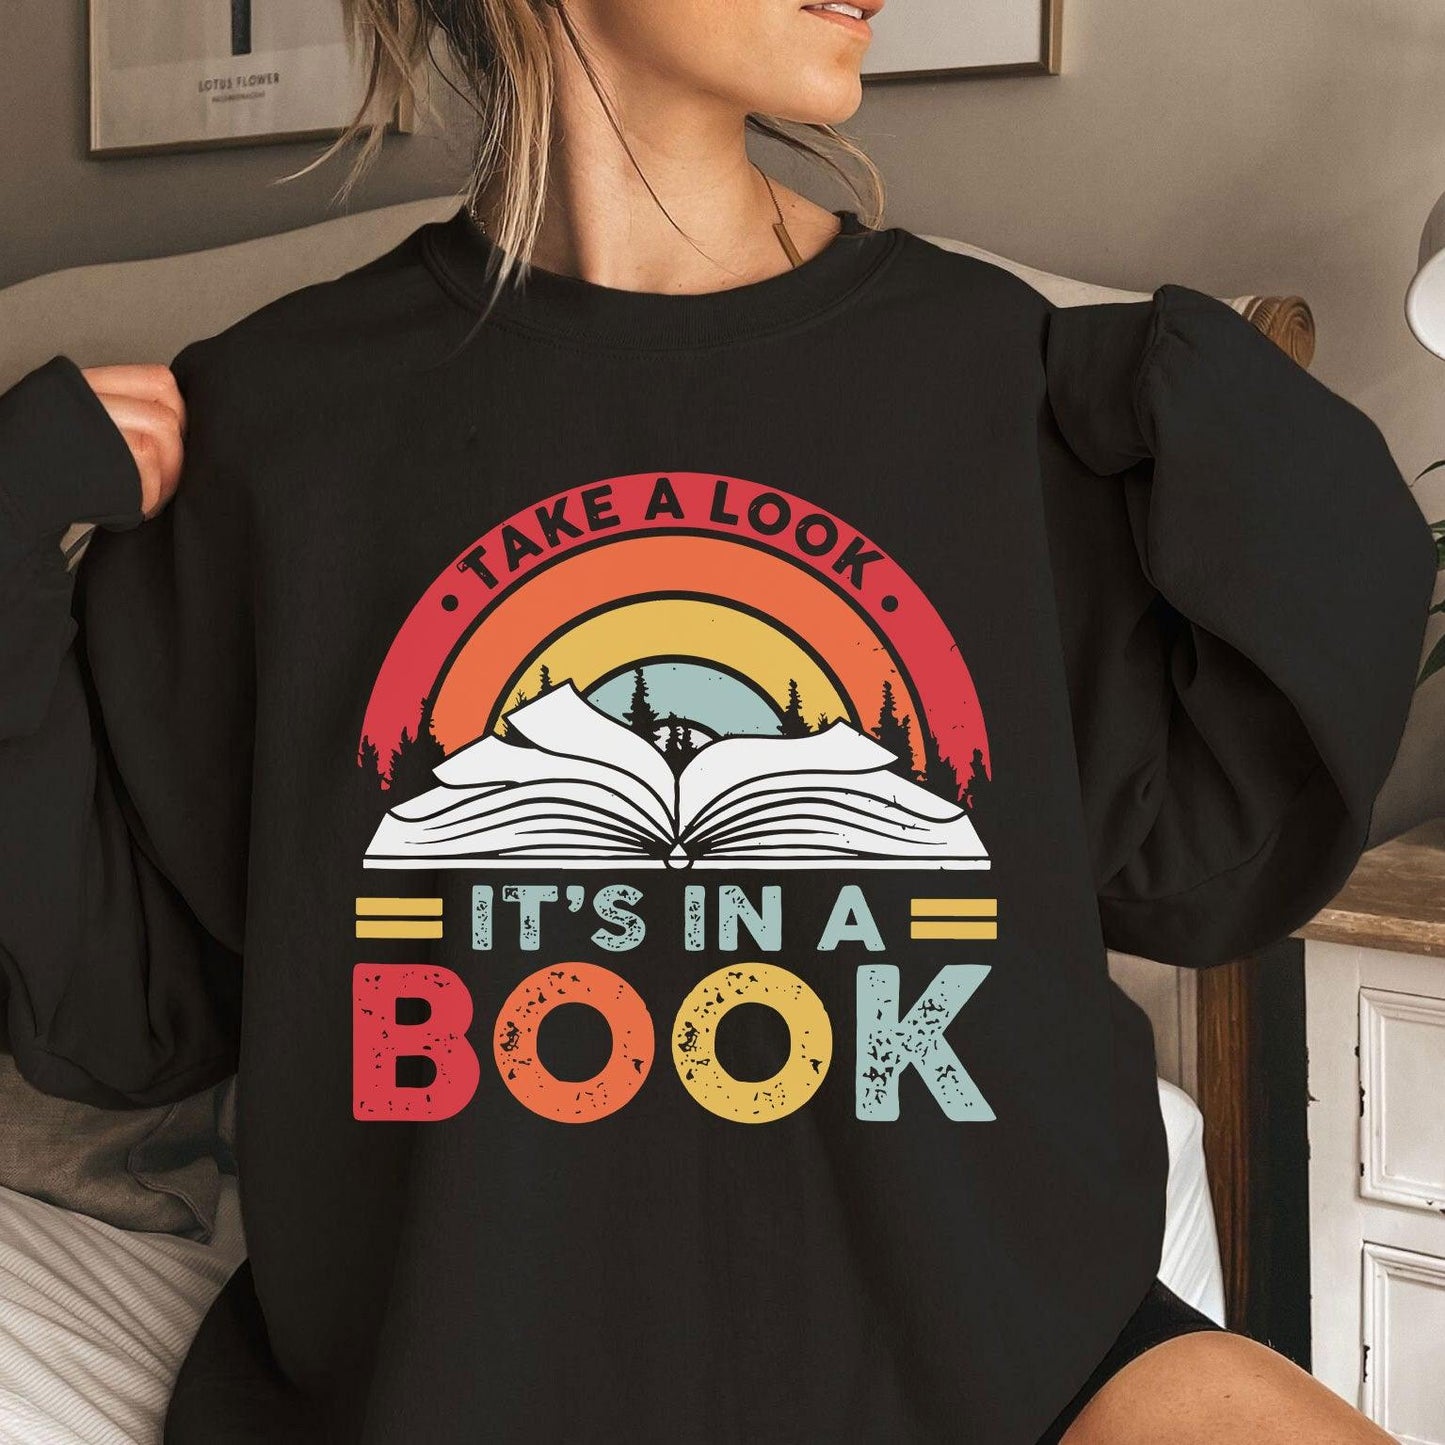 Werfen Sie einen Blick darauf es steht in einem Buch Sweatshirt und Hemden - Geschenk für Buchliebhaber - GiftHaus